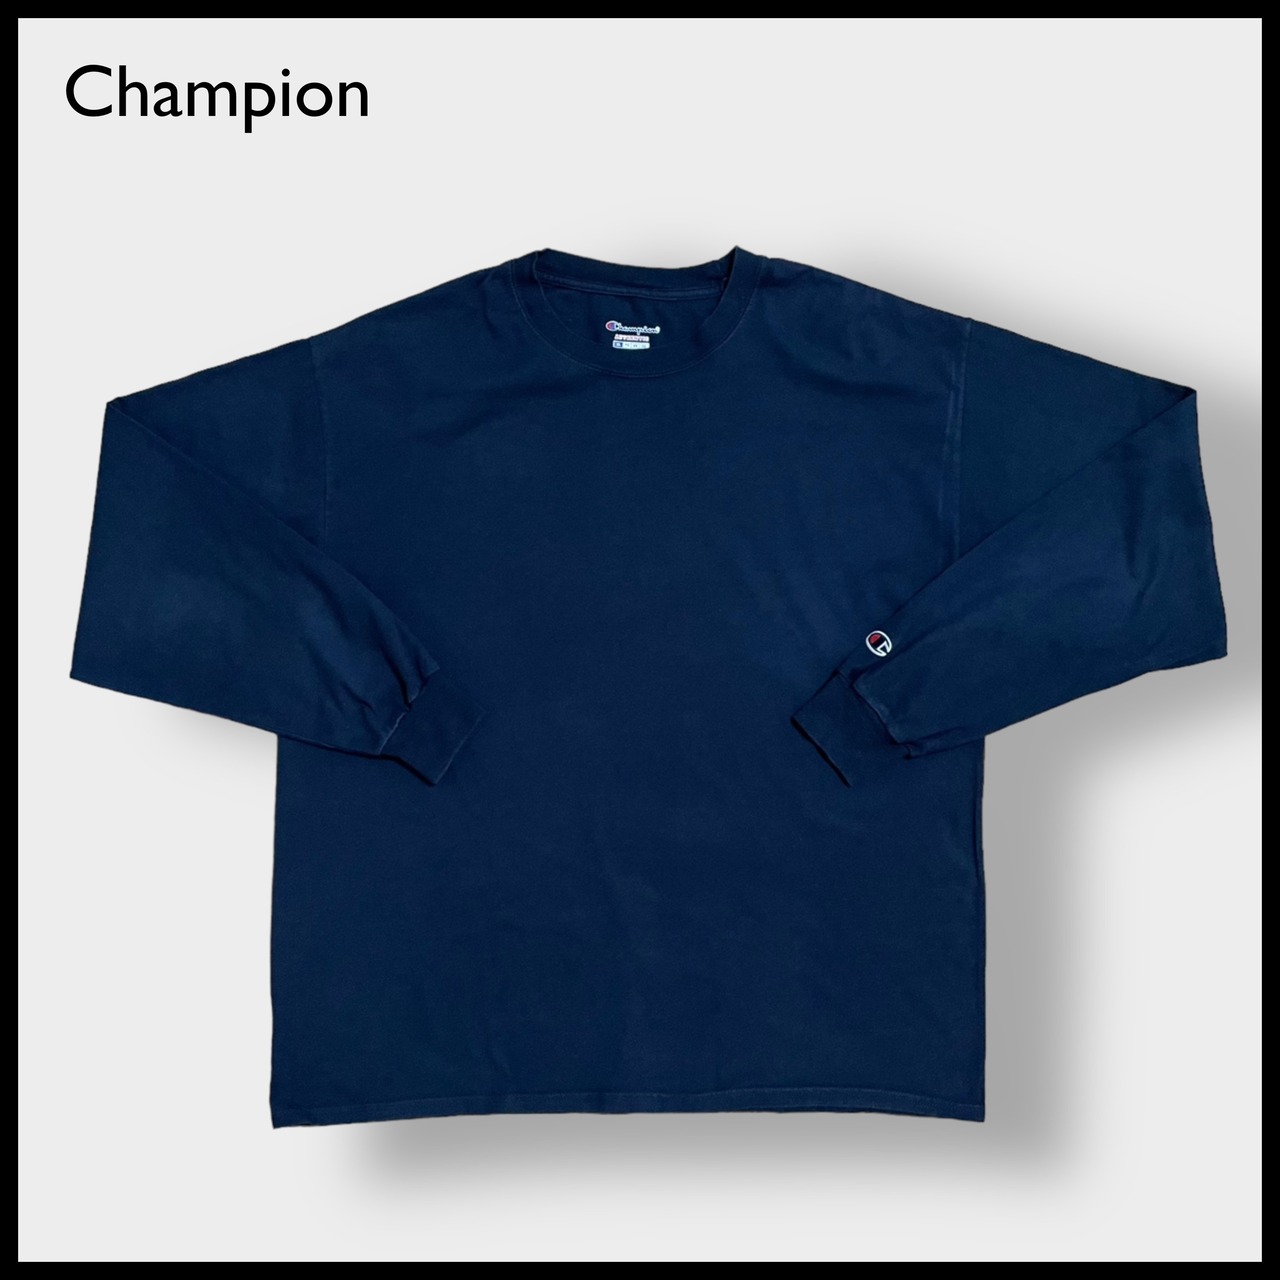 【Champion】無地 プレーン ロンT ロングTシャツ 長袖Tシャツ チャンピオン X-LARGE ビッグサイズ シンプル ネイビー US古着